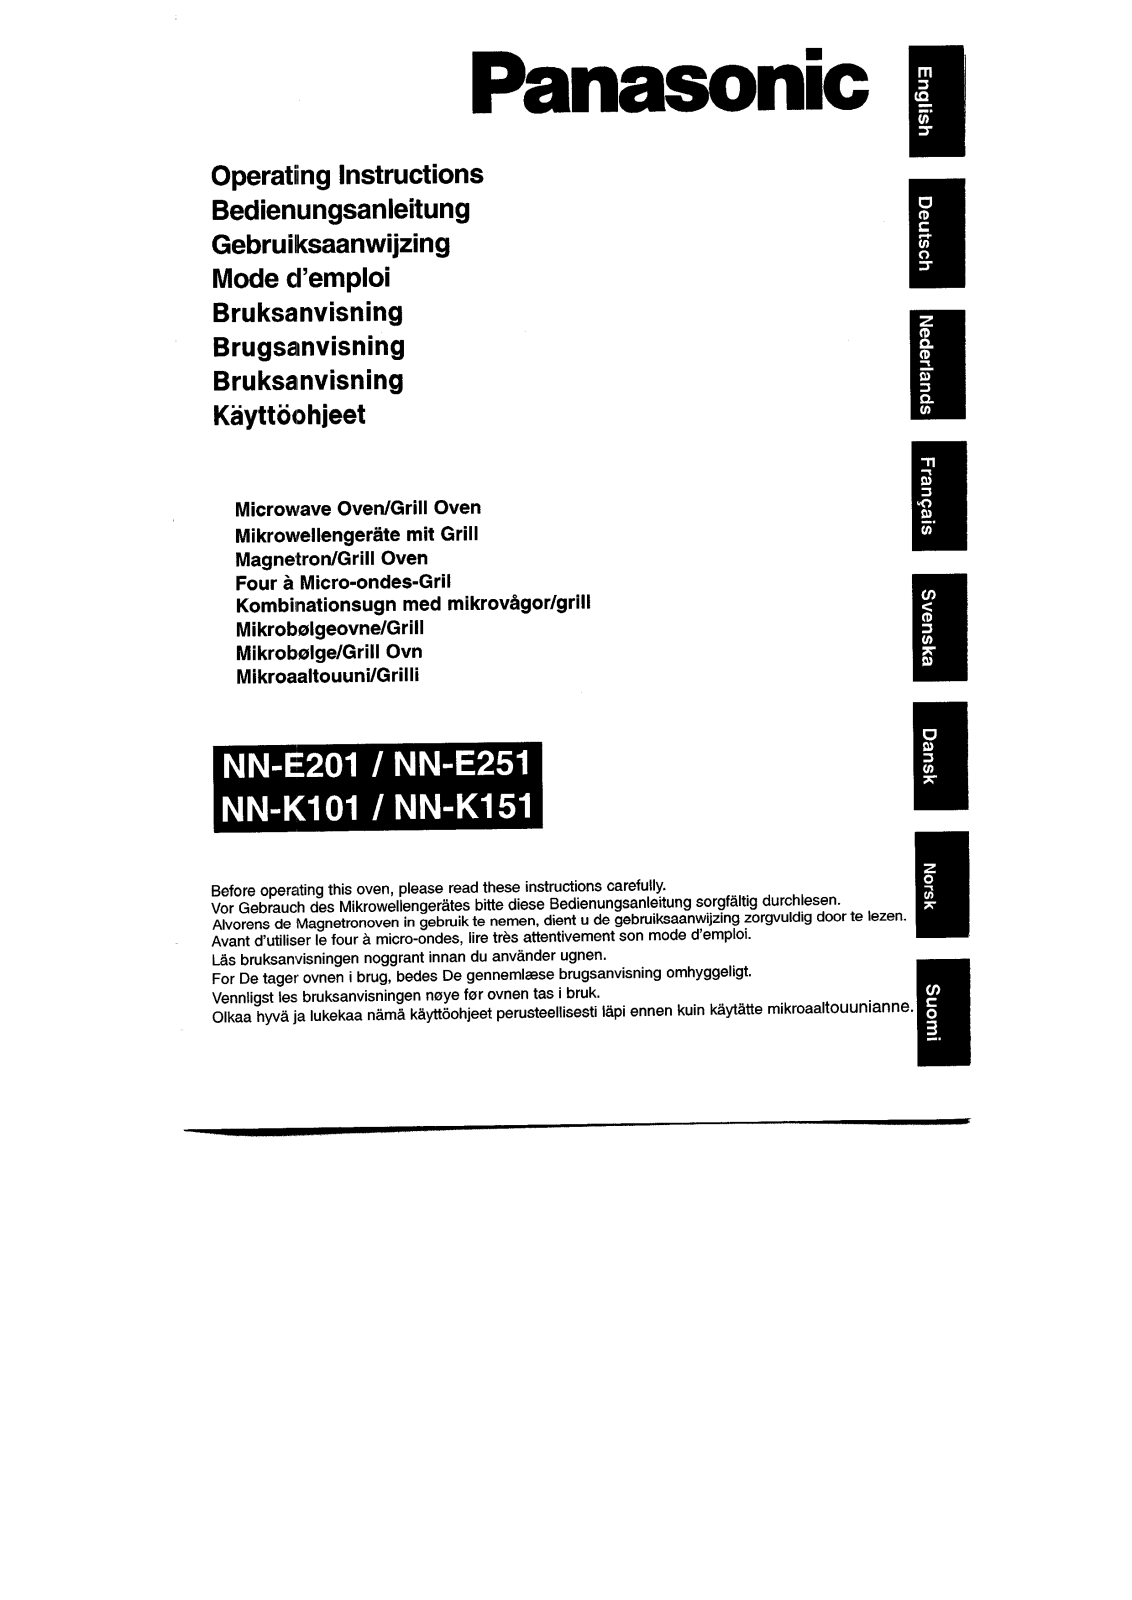 PANASONIC NN-E201, NN-E201W, NN-E251, NN-E251W, NN-K101 User Manual